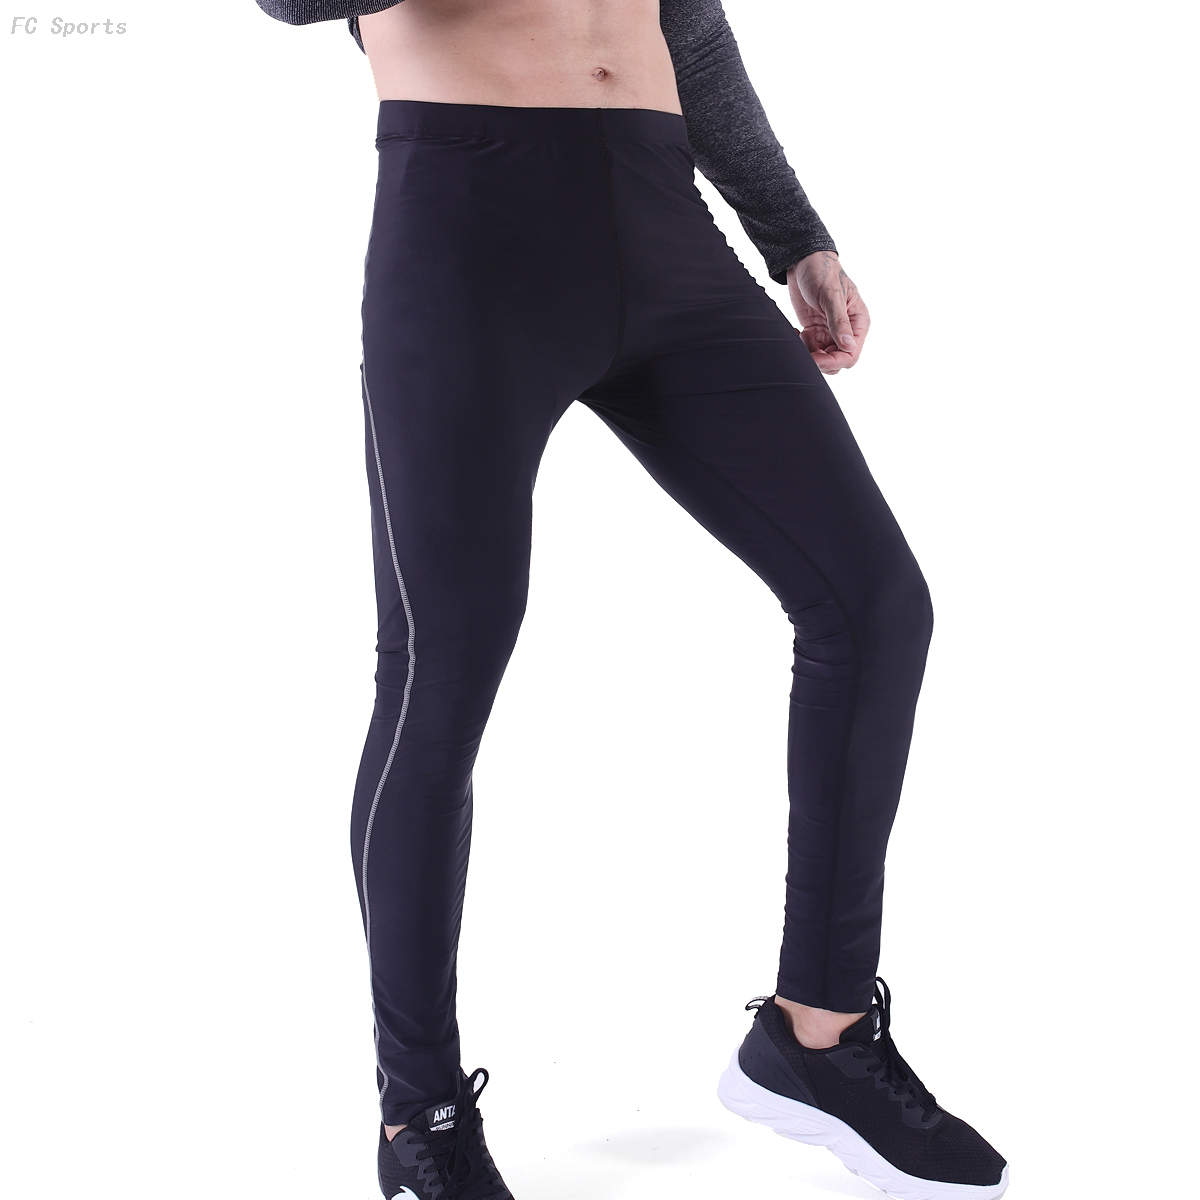 Men's Gym Running Training Tight Pants Jogging Bottoms Workout Legging